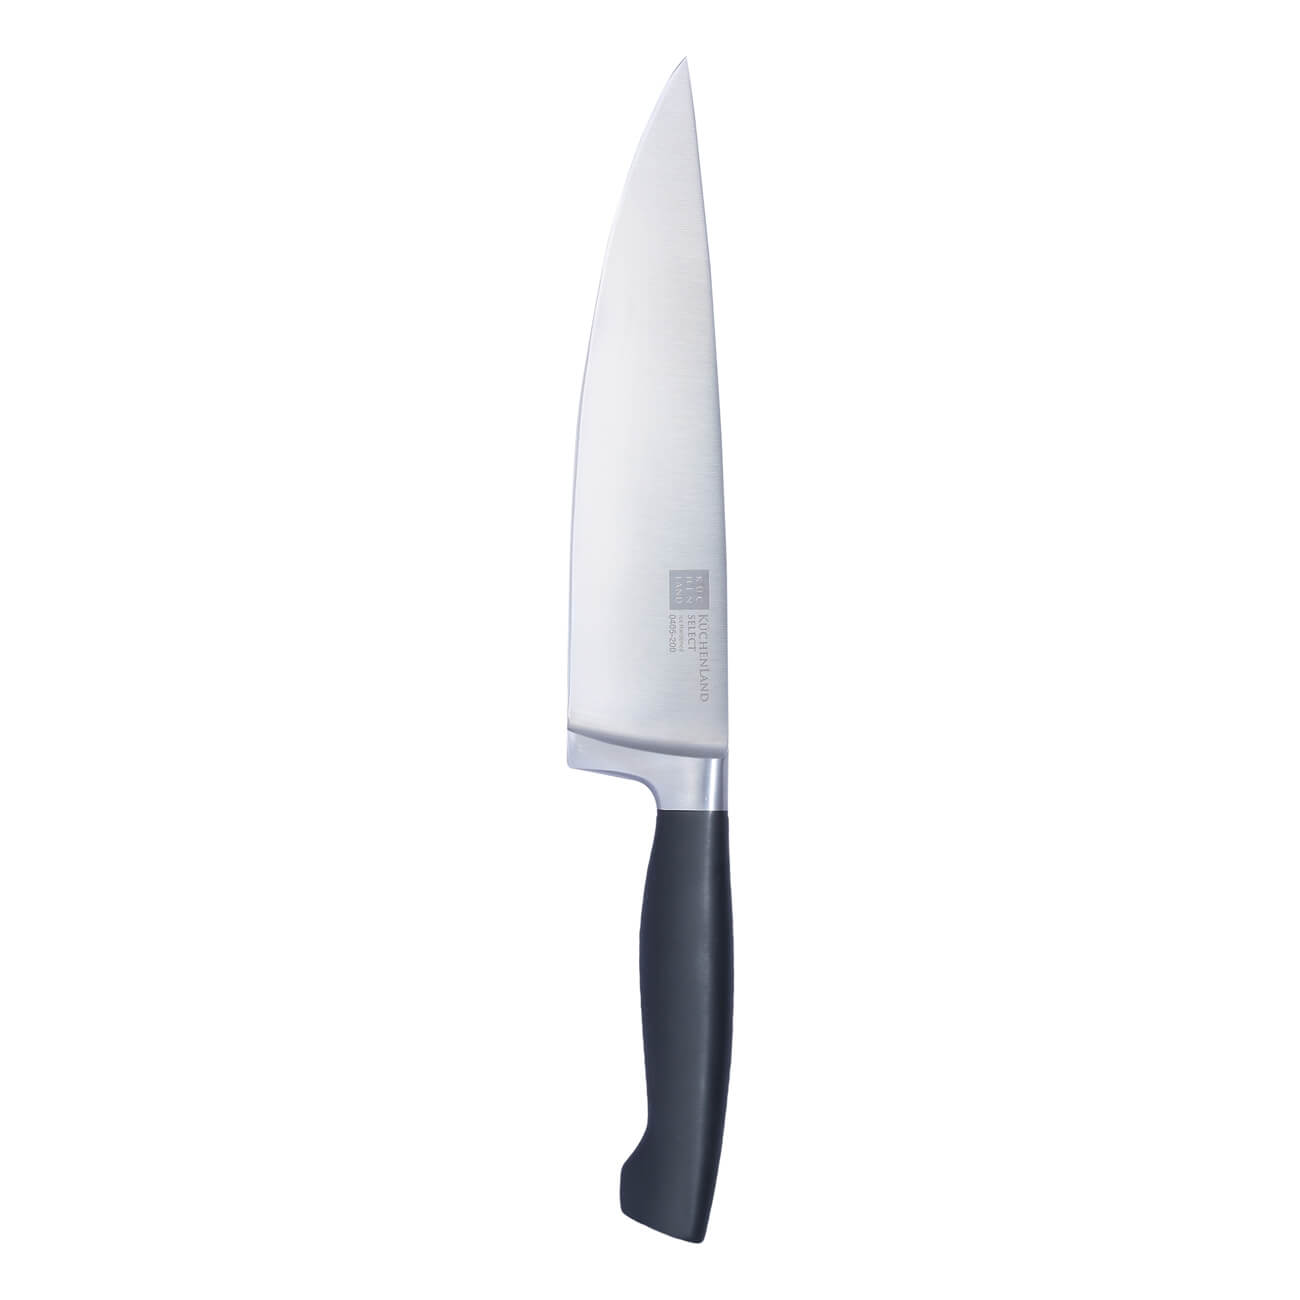 Kuchenland Нож поварской, 20 см, сталь/пластик, Select набор для выпечки 5 пр скалка венчик формы силикон сталь дерево фигуры bakery